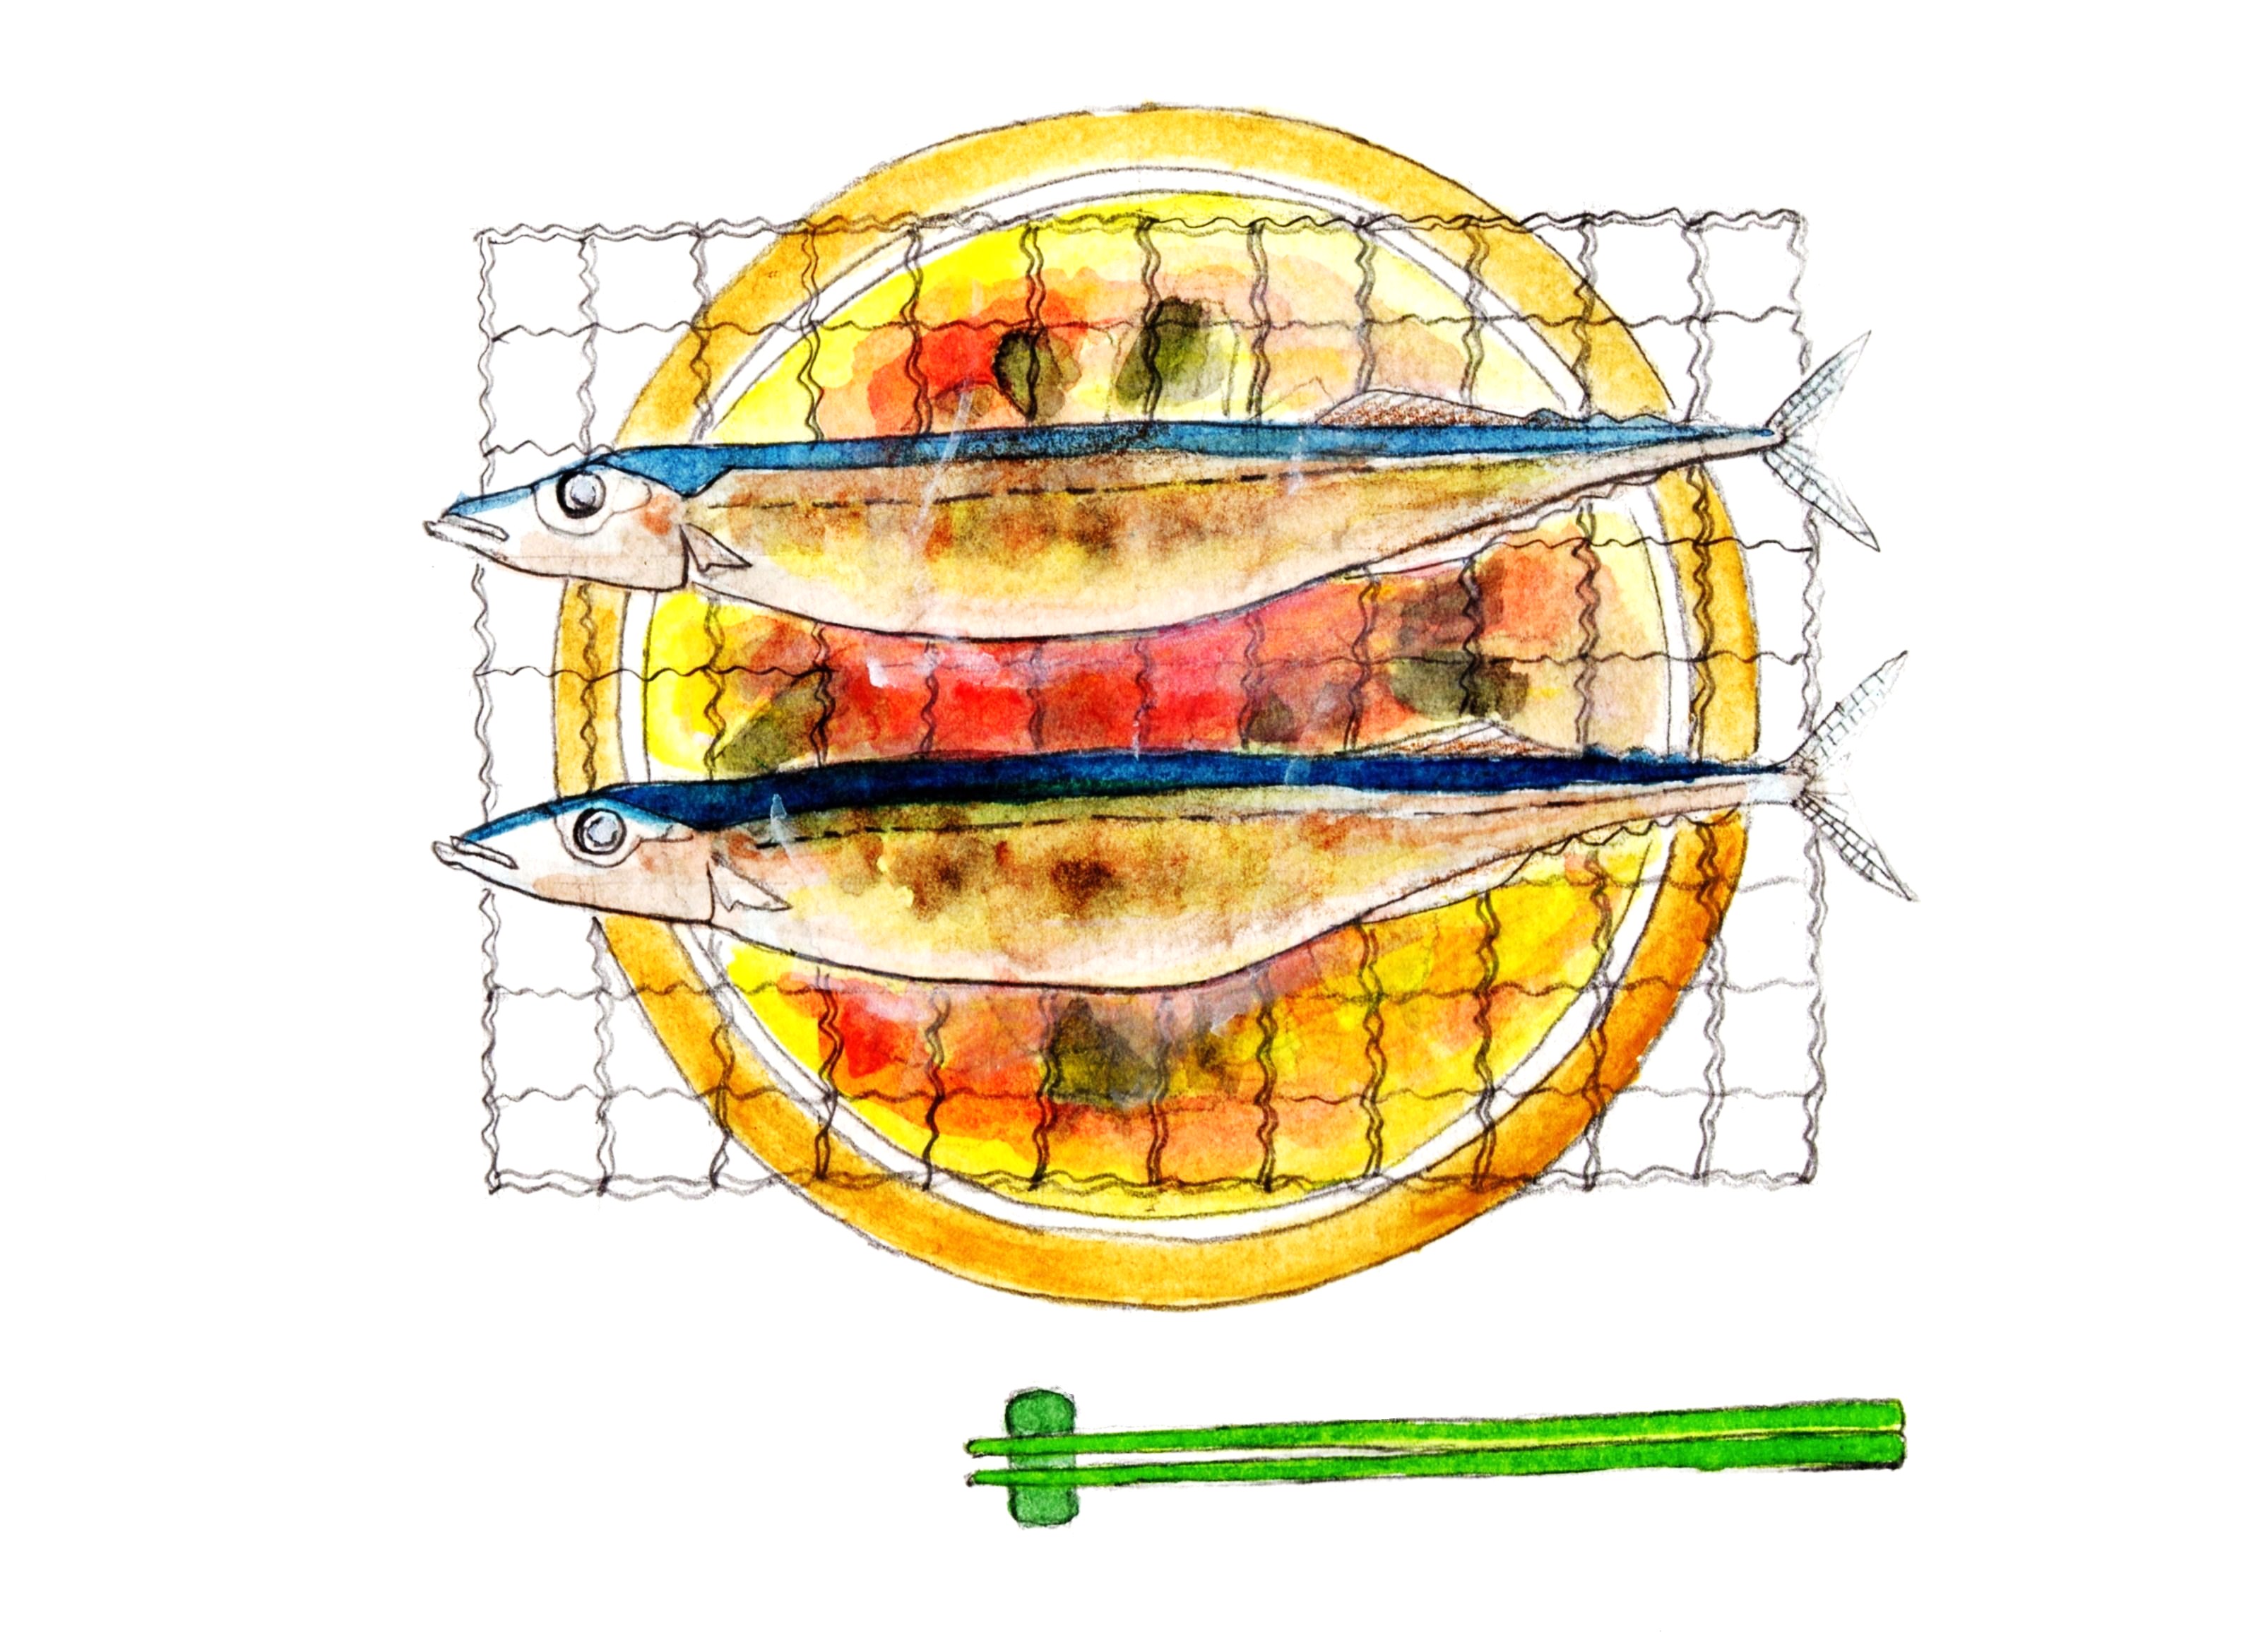 秋刀魚 さんま のレシピ 王道は塩焼き 扱い方も紹介 豆知識セブン